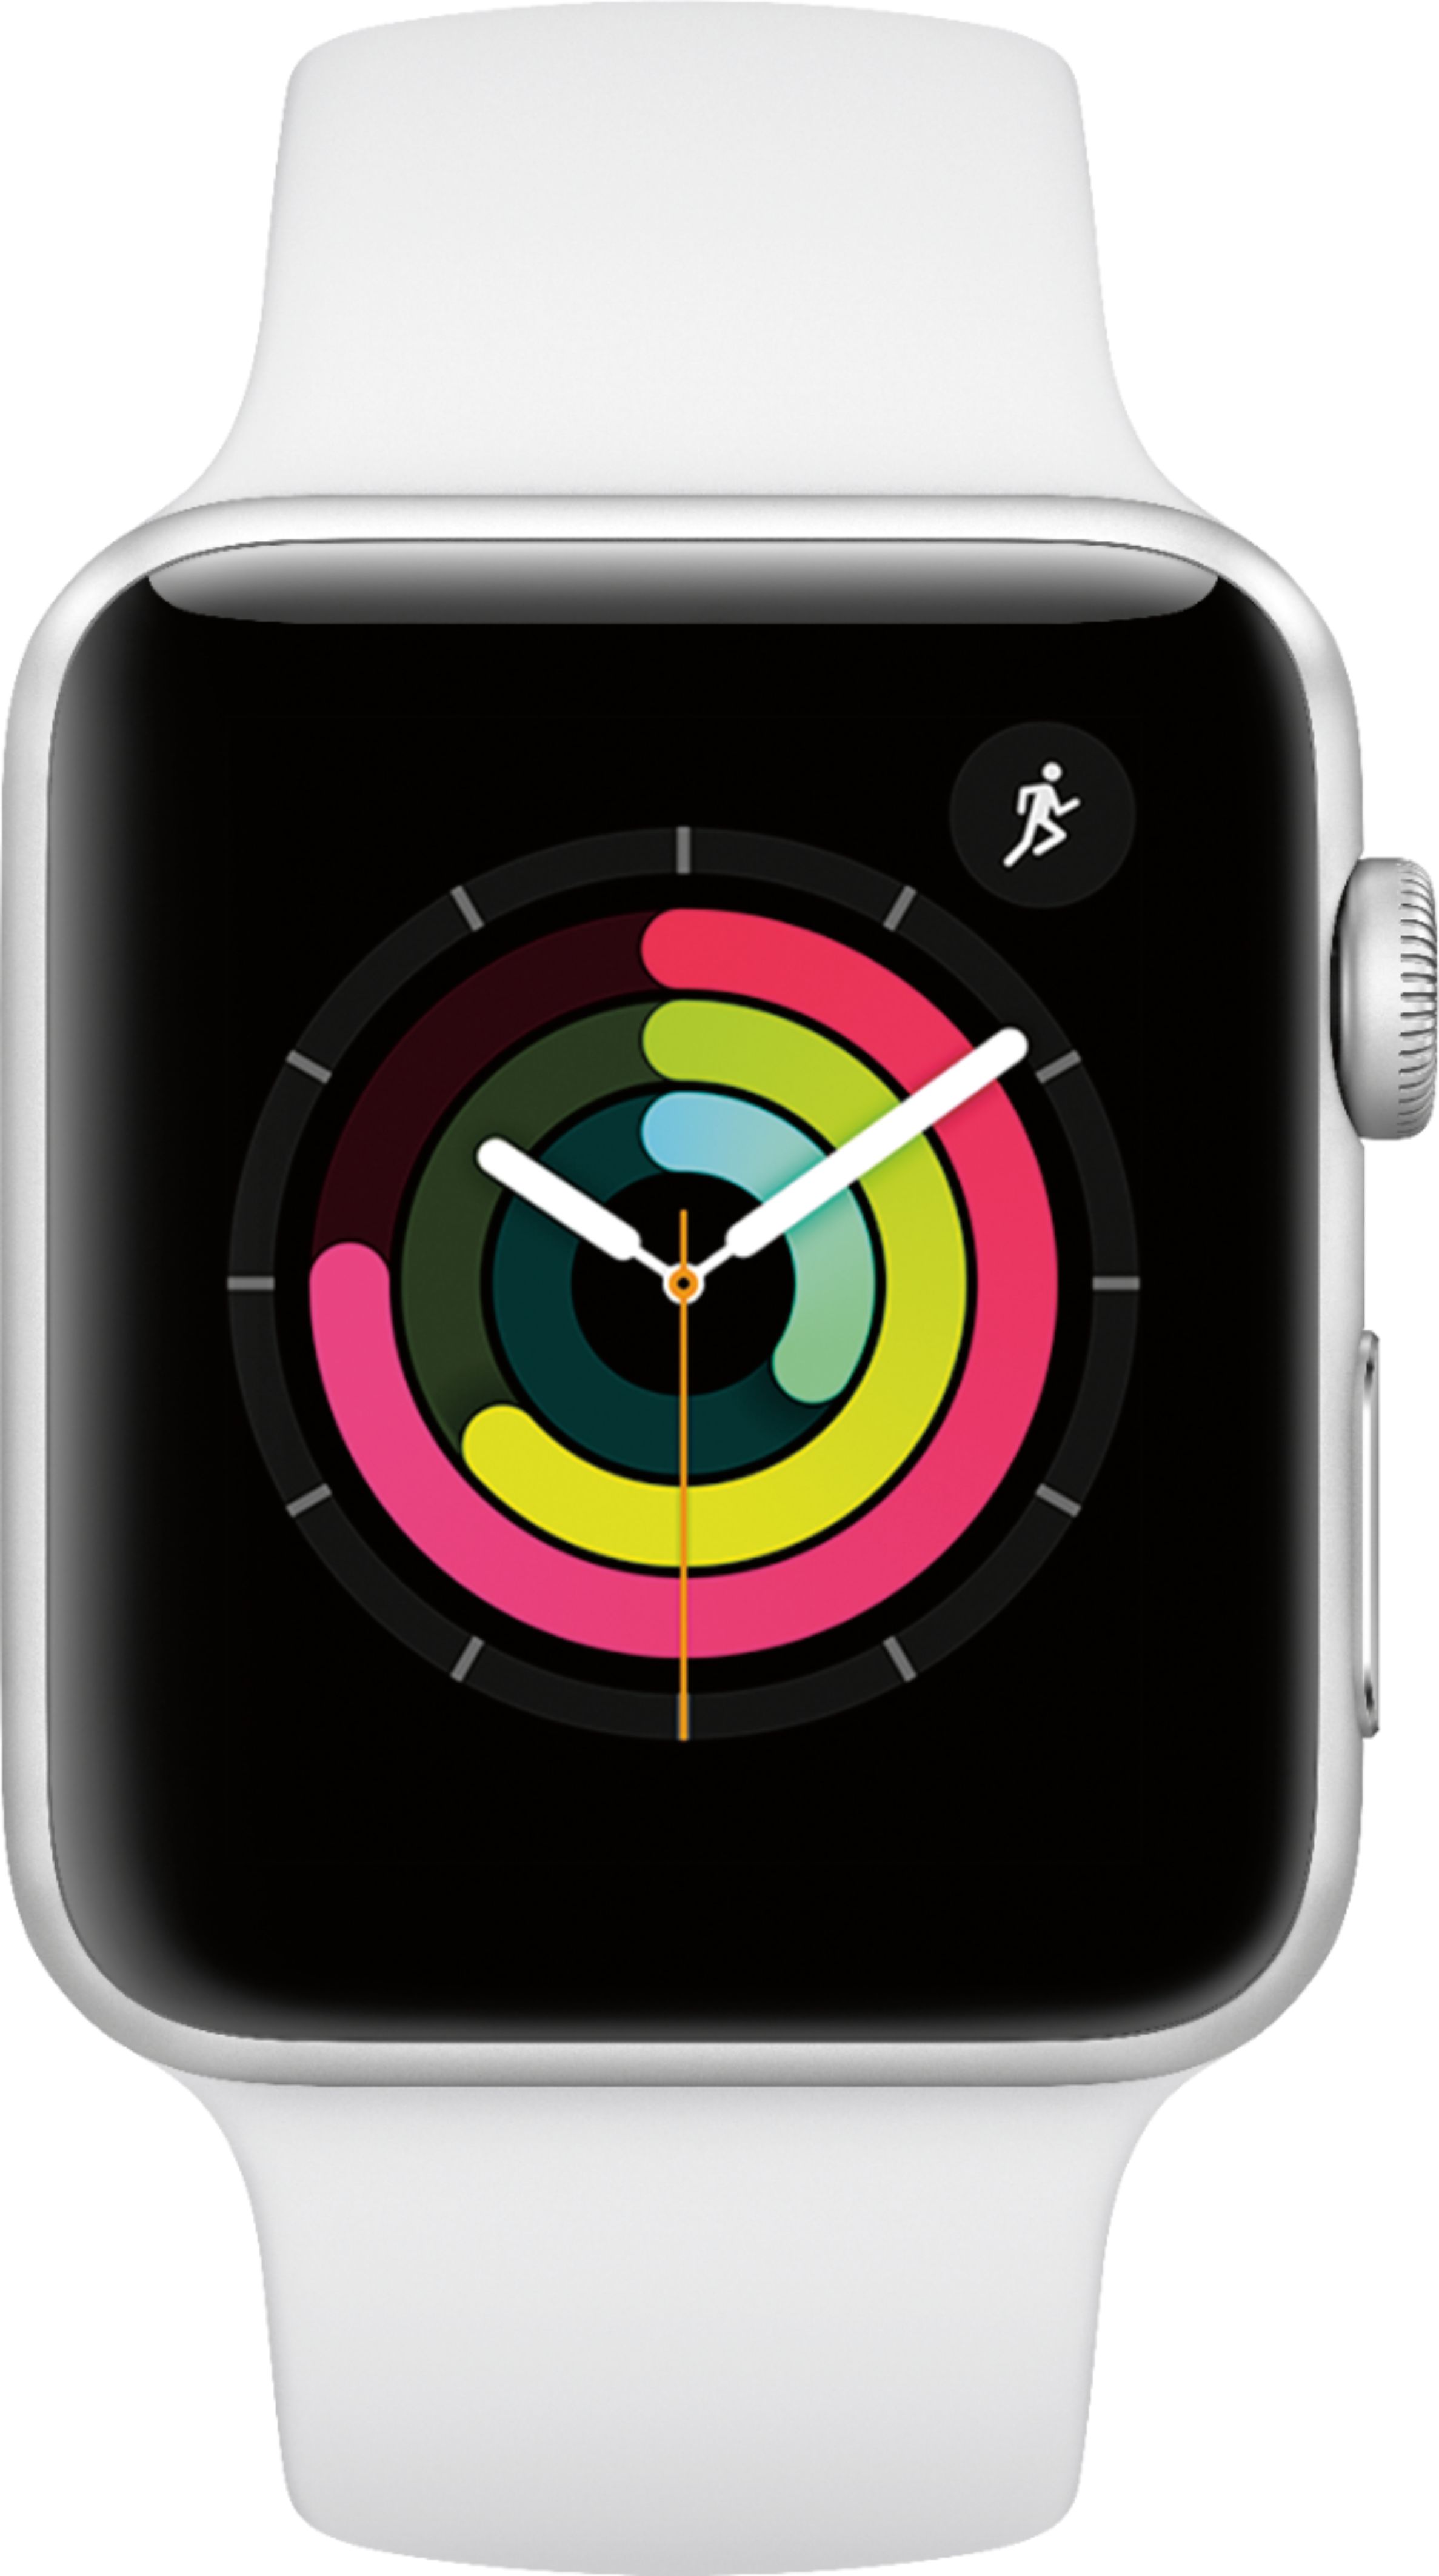 スマートフォン/携帯電話 その他 Best Buy: Apple Watch Series 3 (GPS) 42mm Silver Aluminum Case 